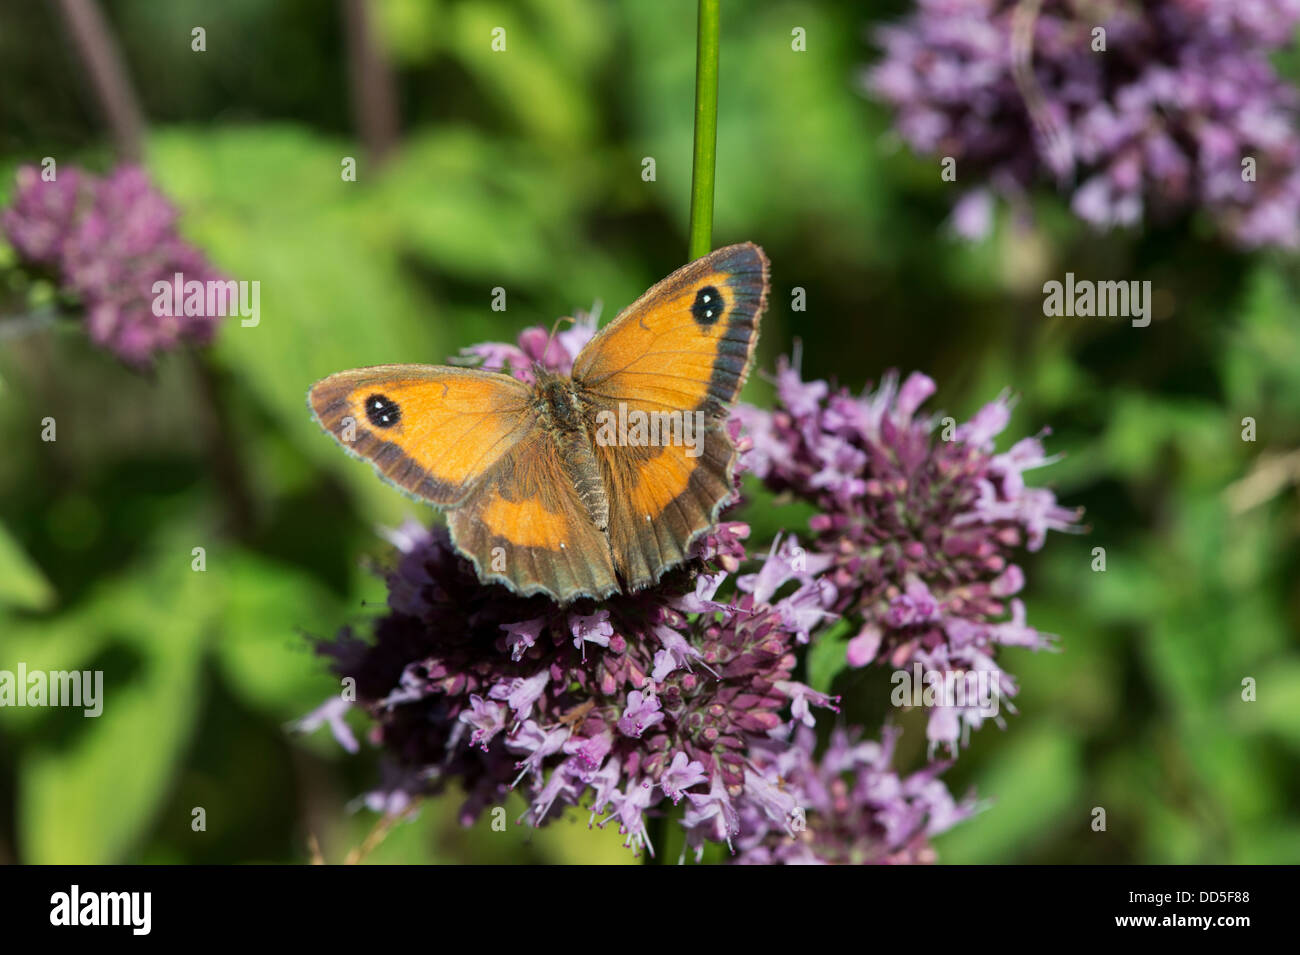 Gatekeeper butterfly on wild marjoram flower Stock Photo